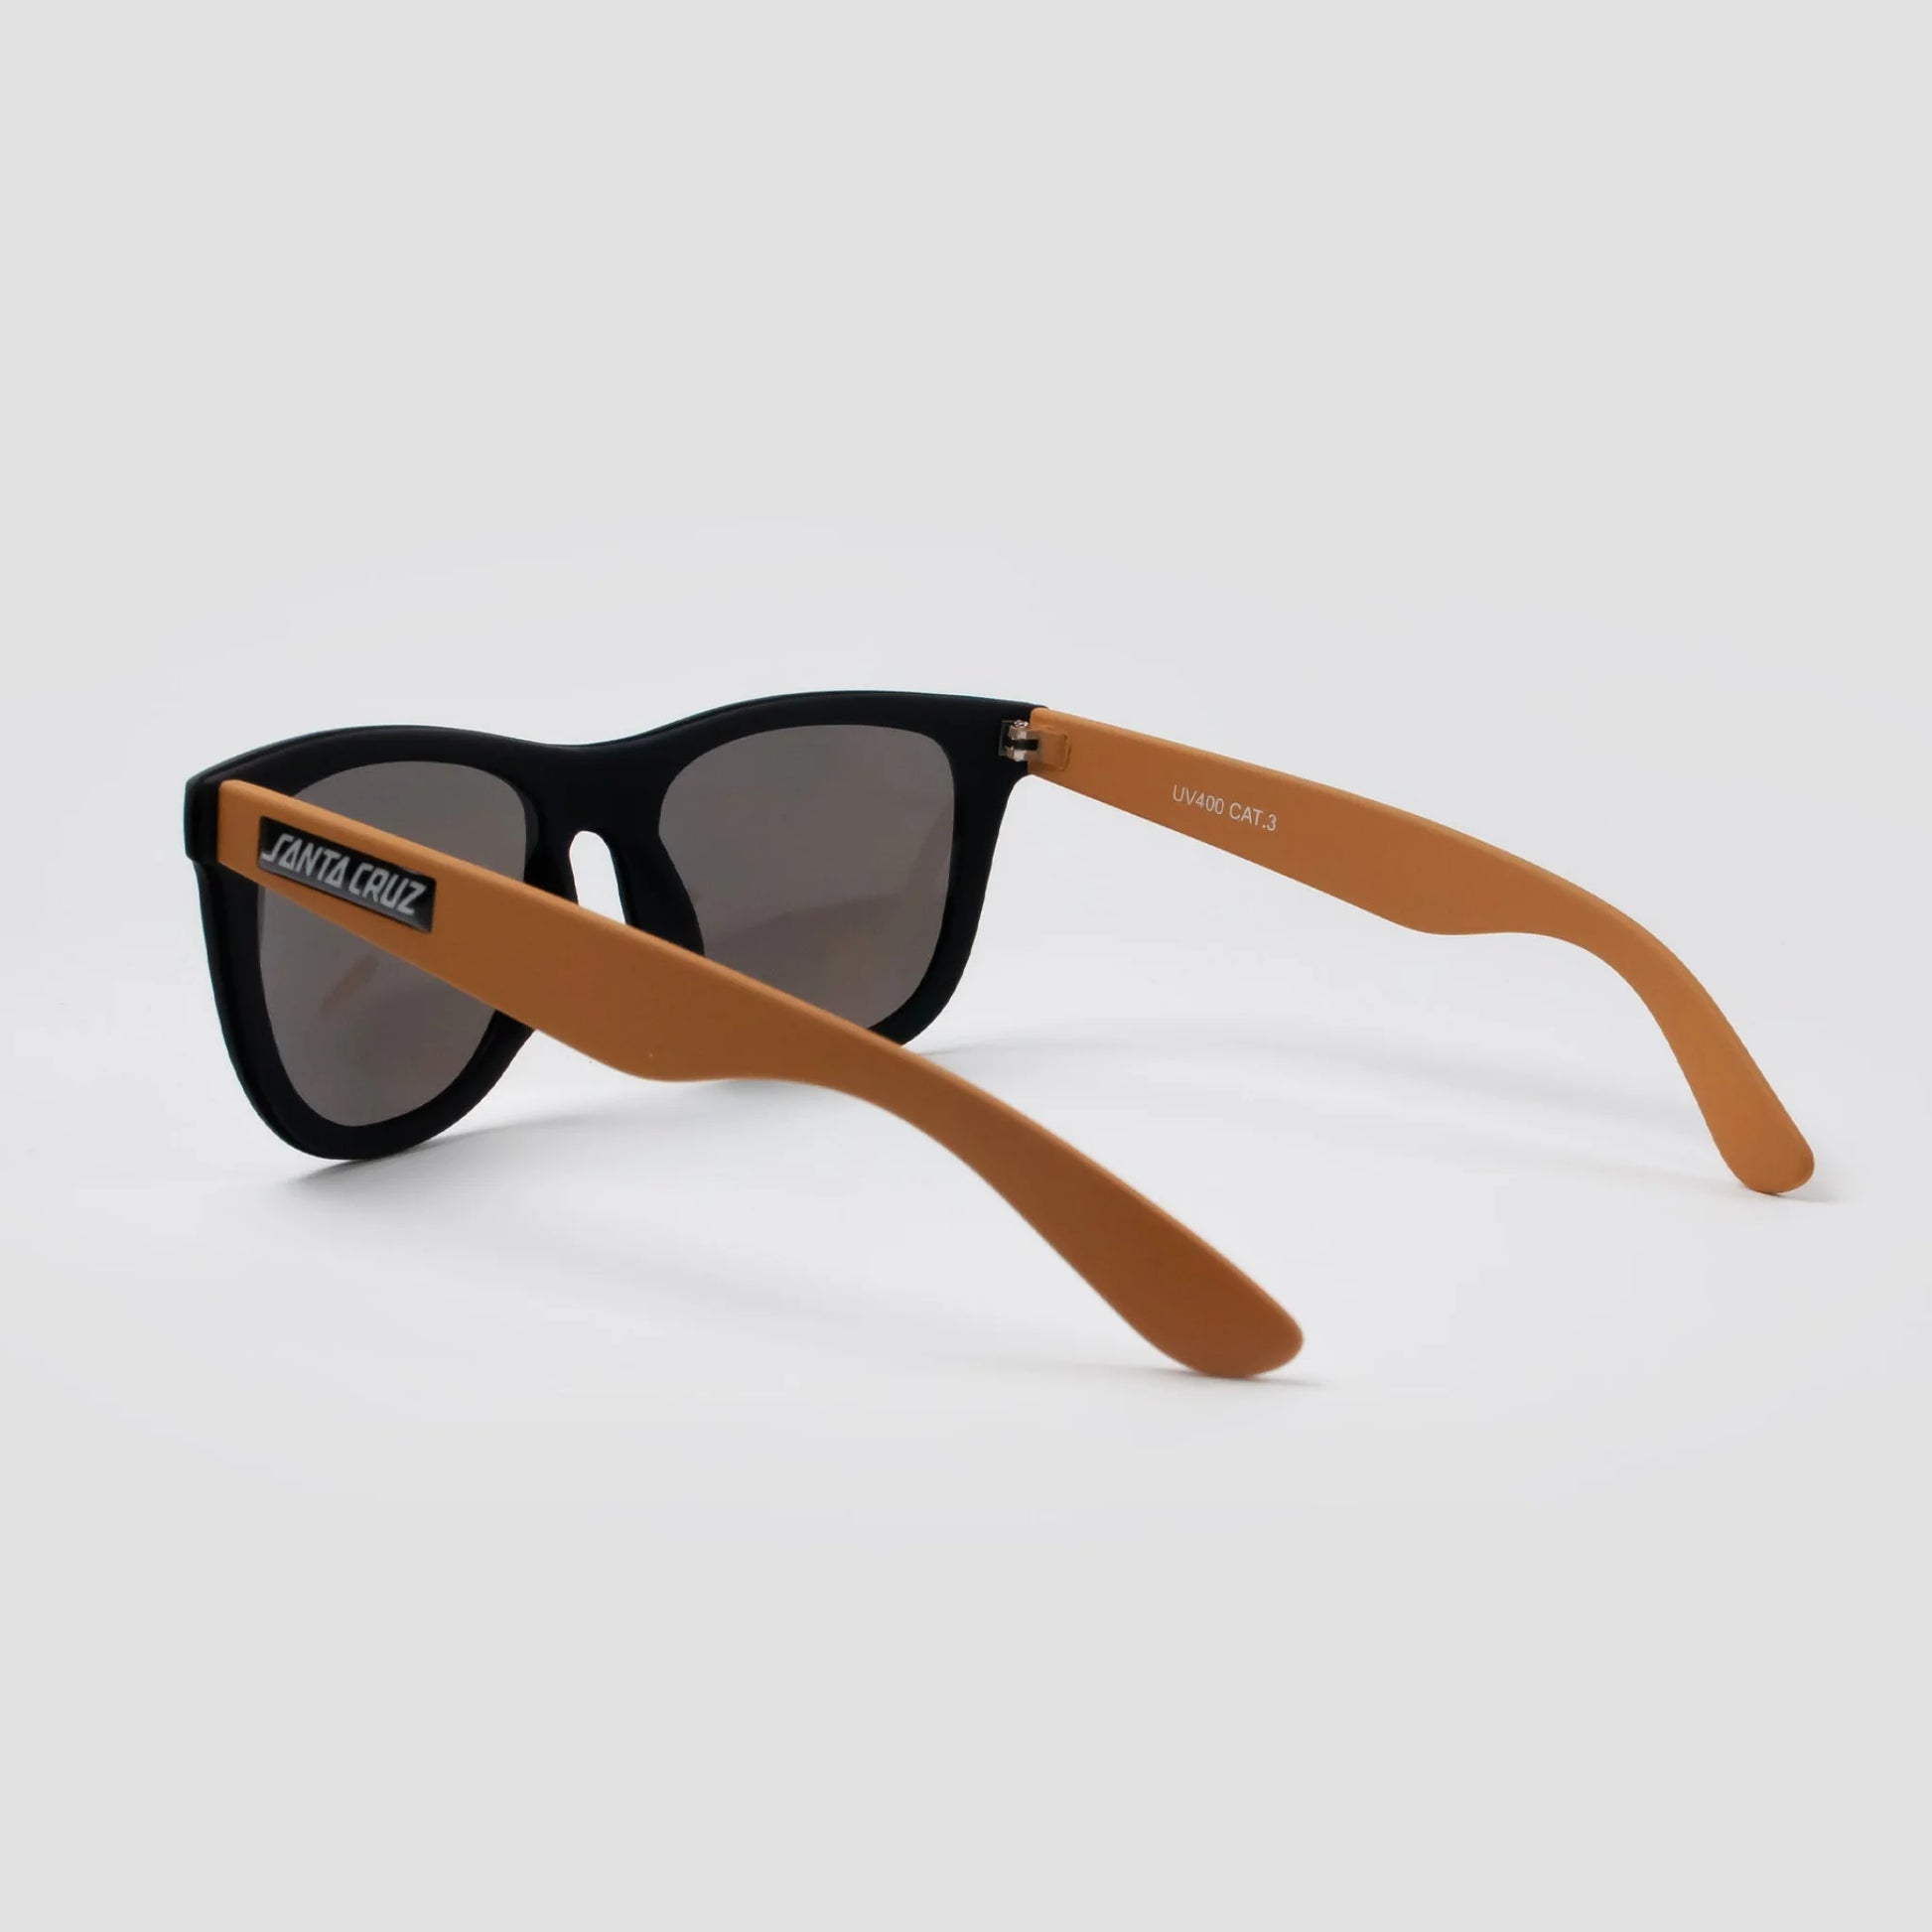 Santa Cruz Darwin Sunglasses - Black/Old Gold - Prime Delux Store